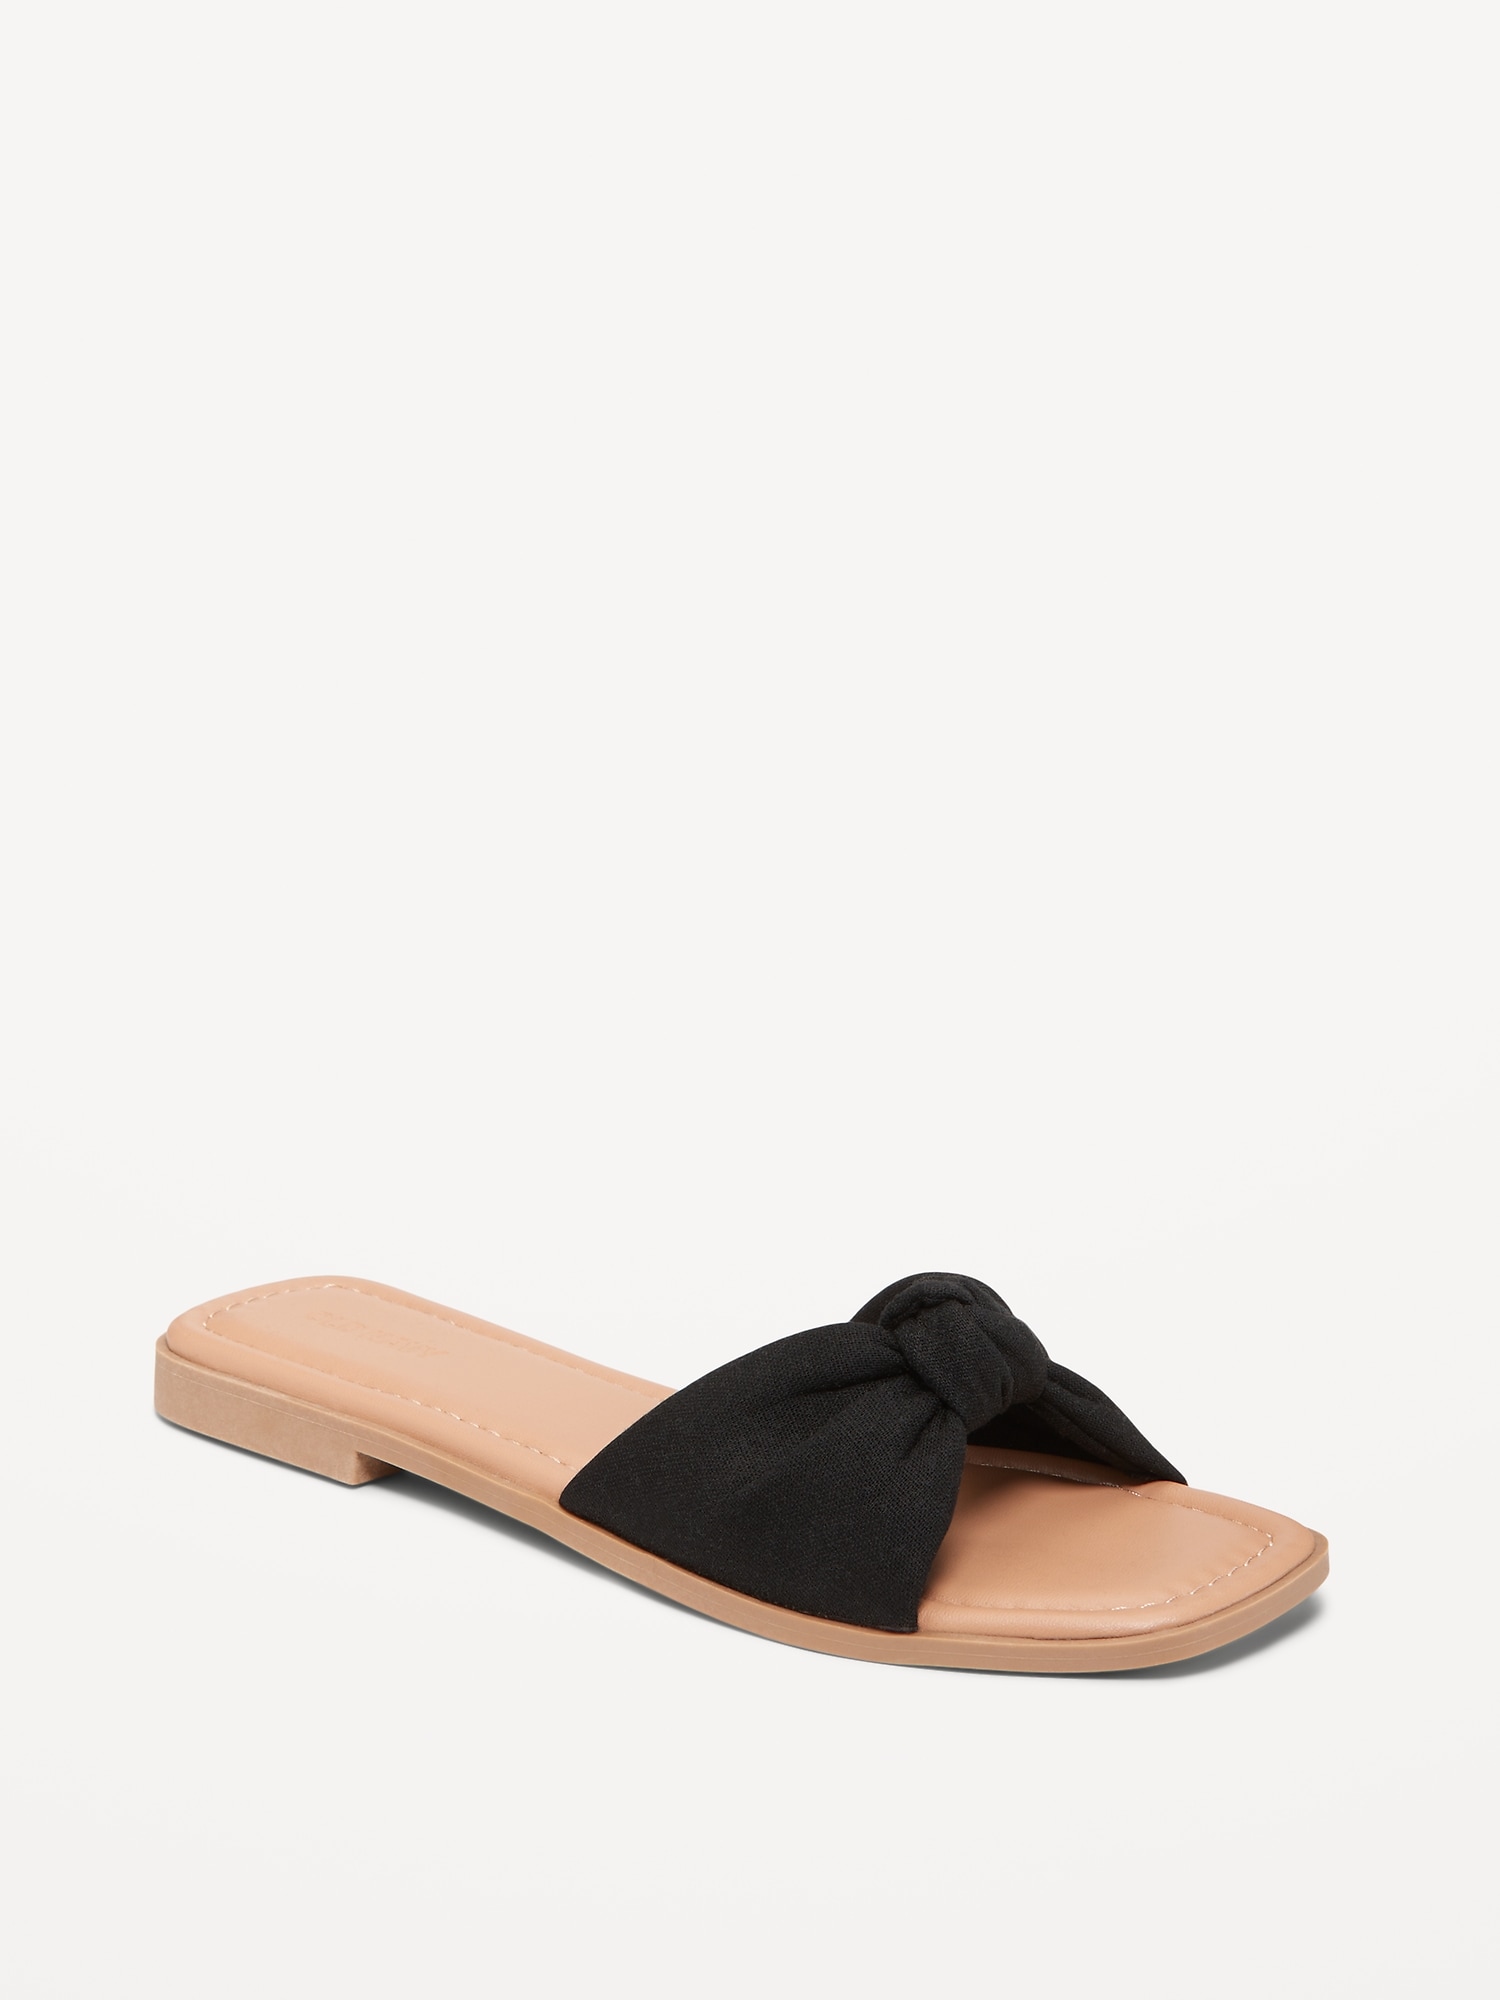 Knot-Front Slide Sandals